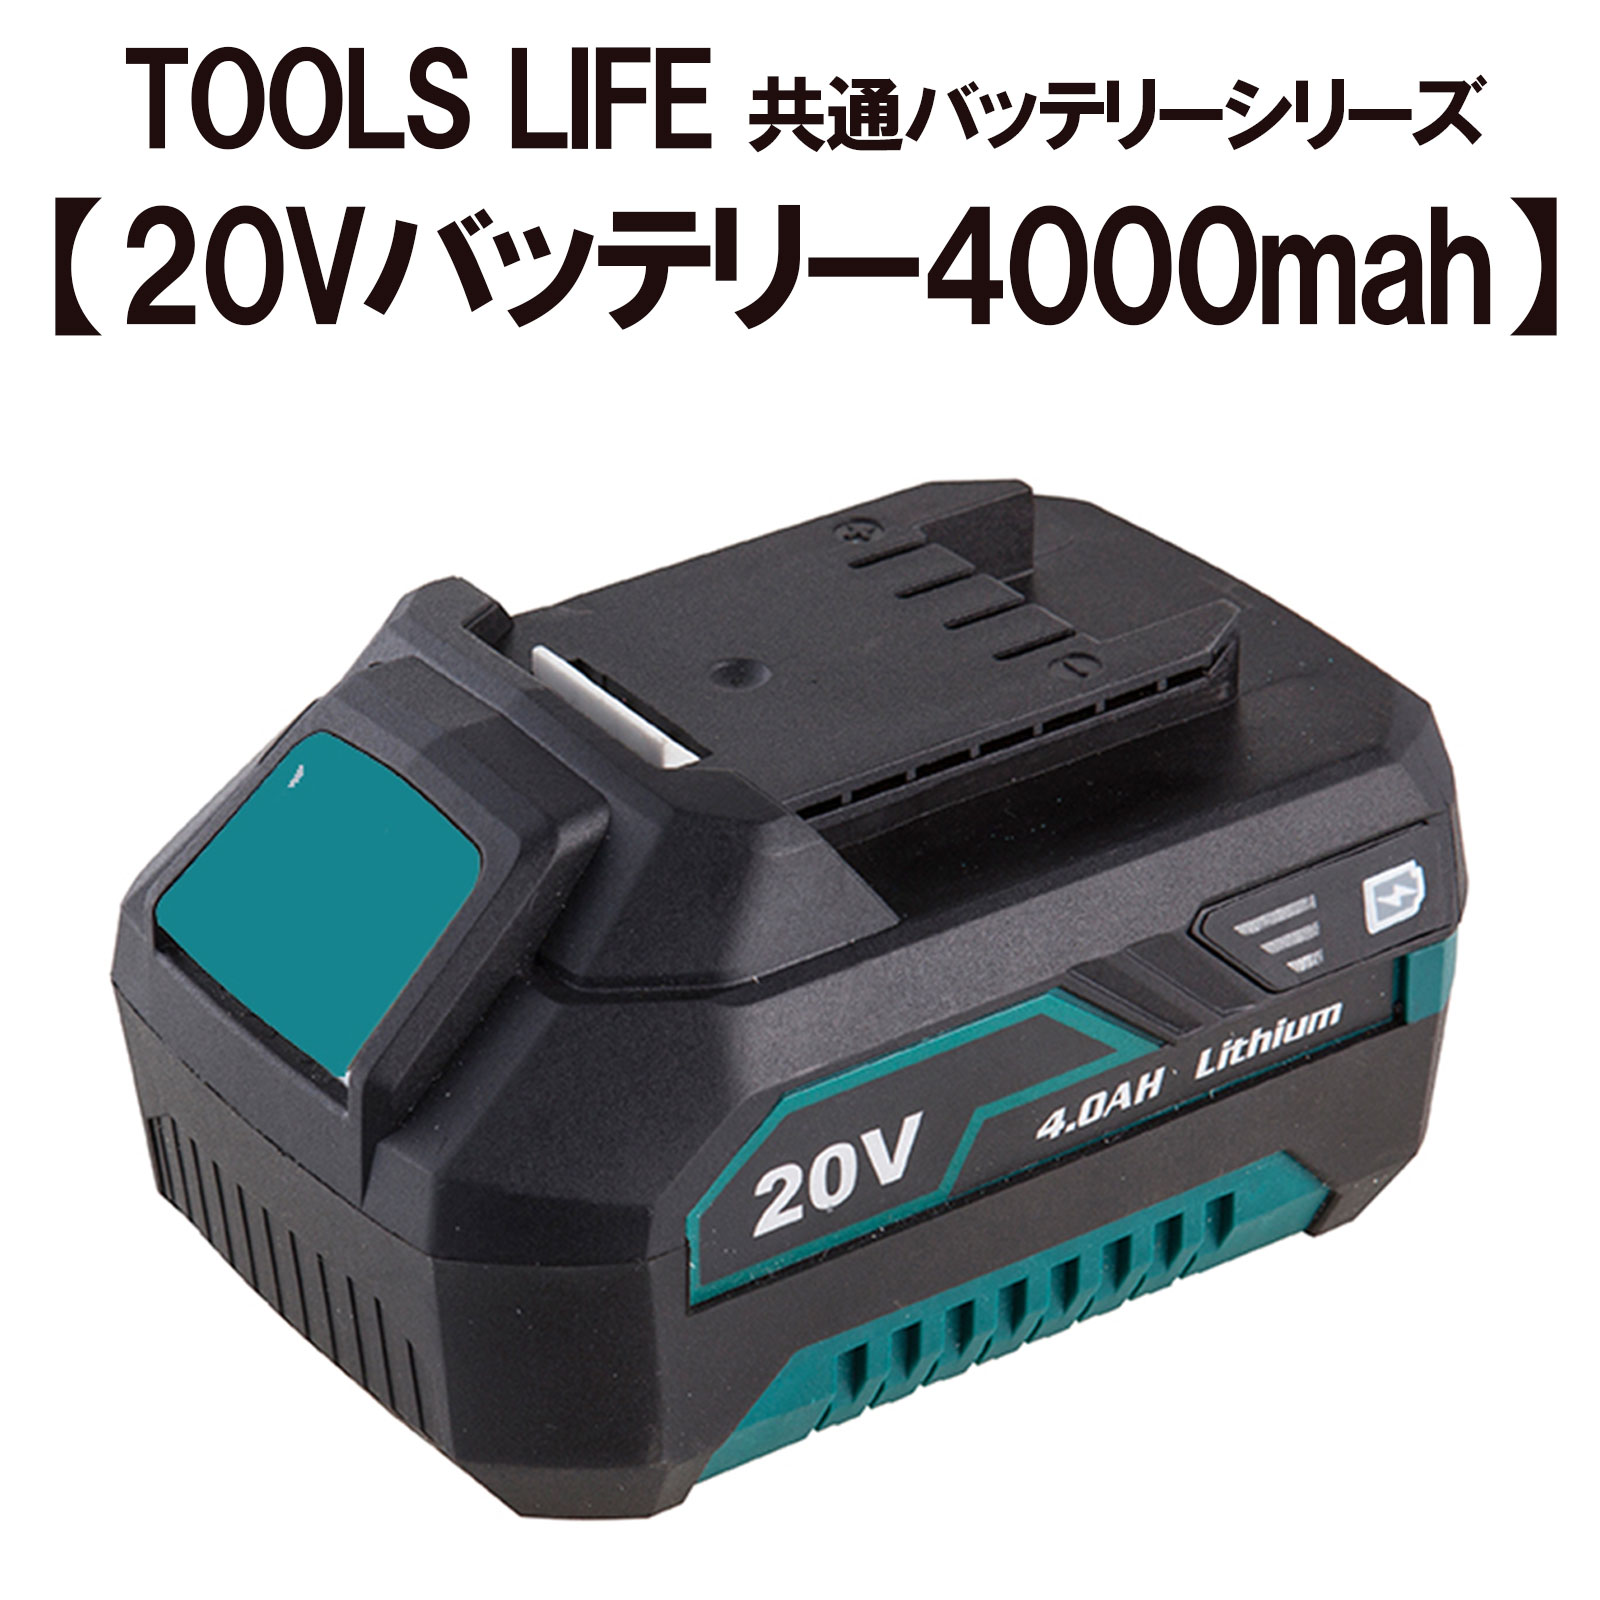 TOOLS LIFE 20Vバッテリー 【TOOLS LIFEコードレス 製品専用】 4000mah TSLF-4000